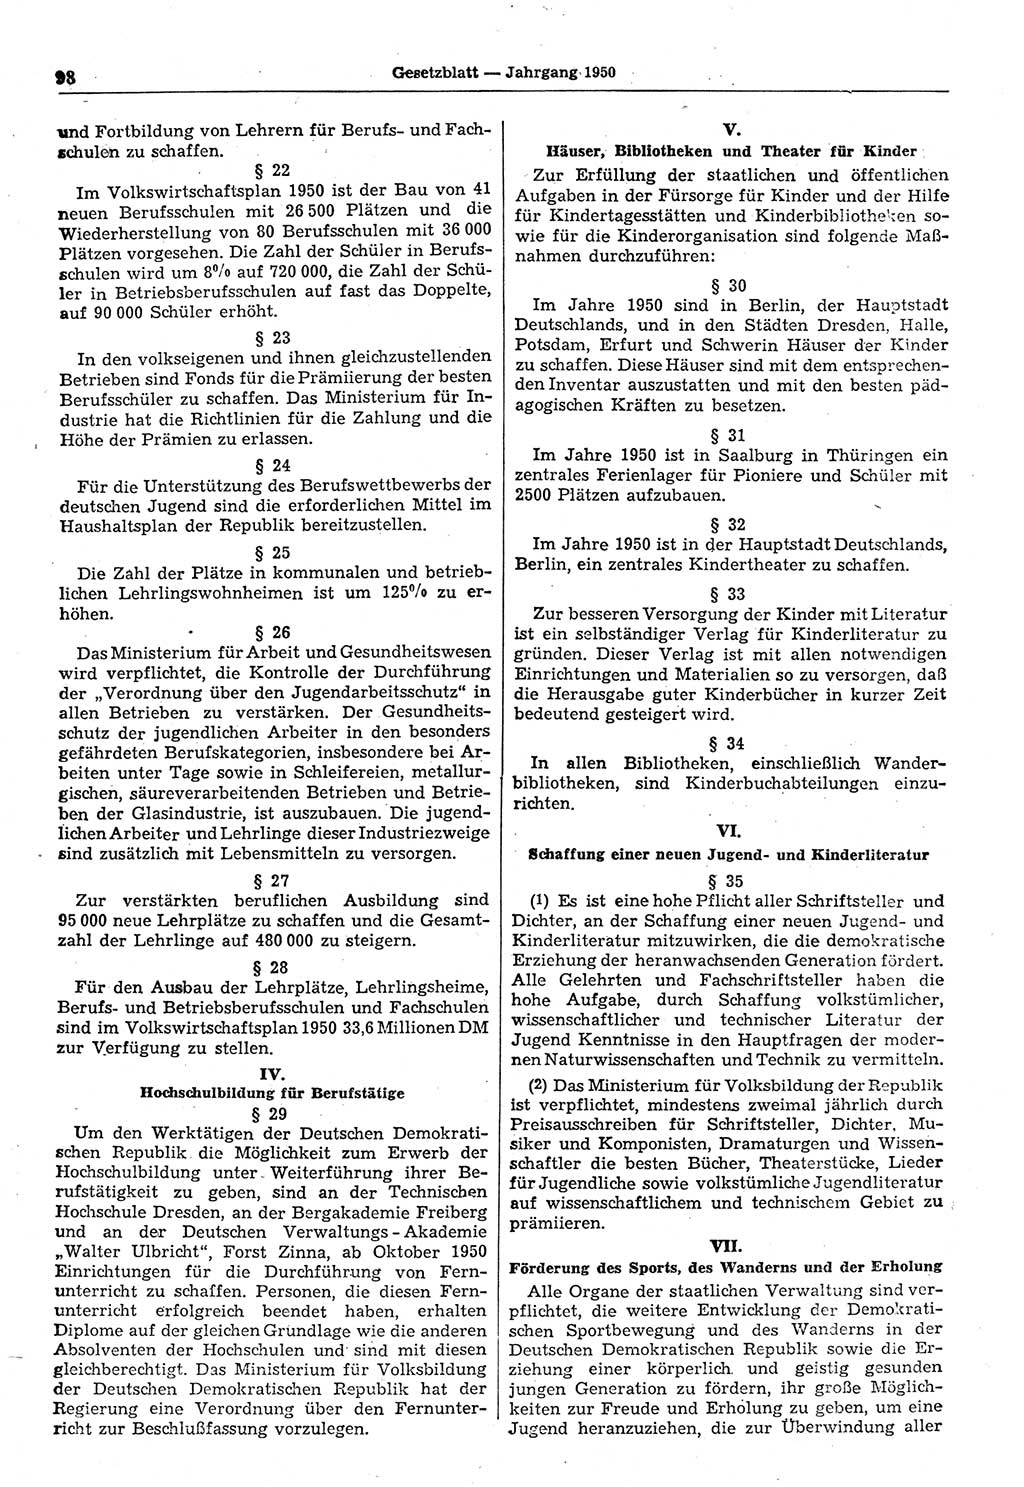 Gesetzblatt (GBl.) der Deutschen Demokratischen Republik (DDR) 1950, Seite 98 (GBl. DDR 1950, S. 98)